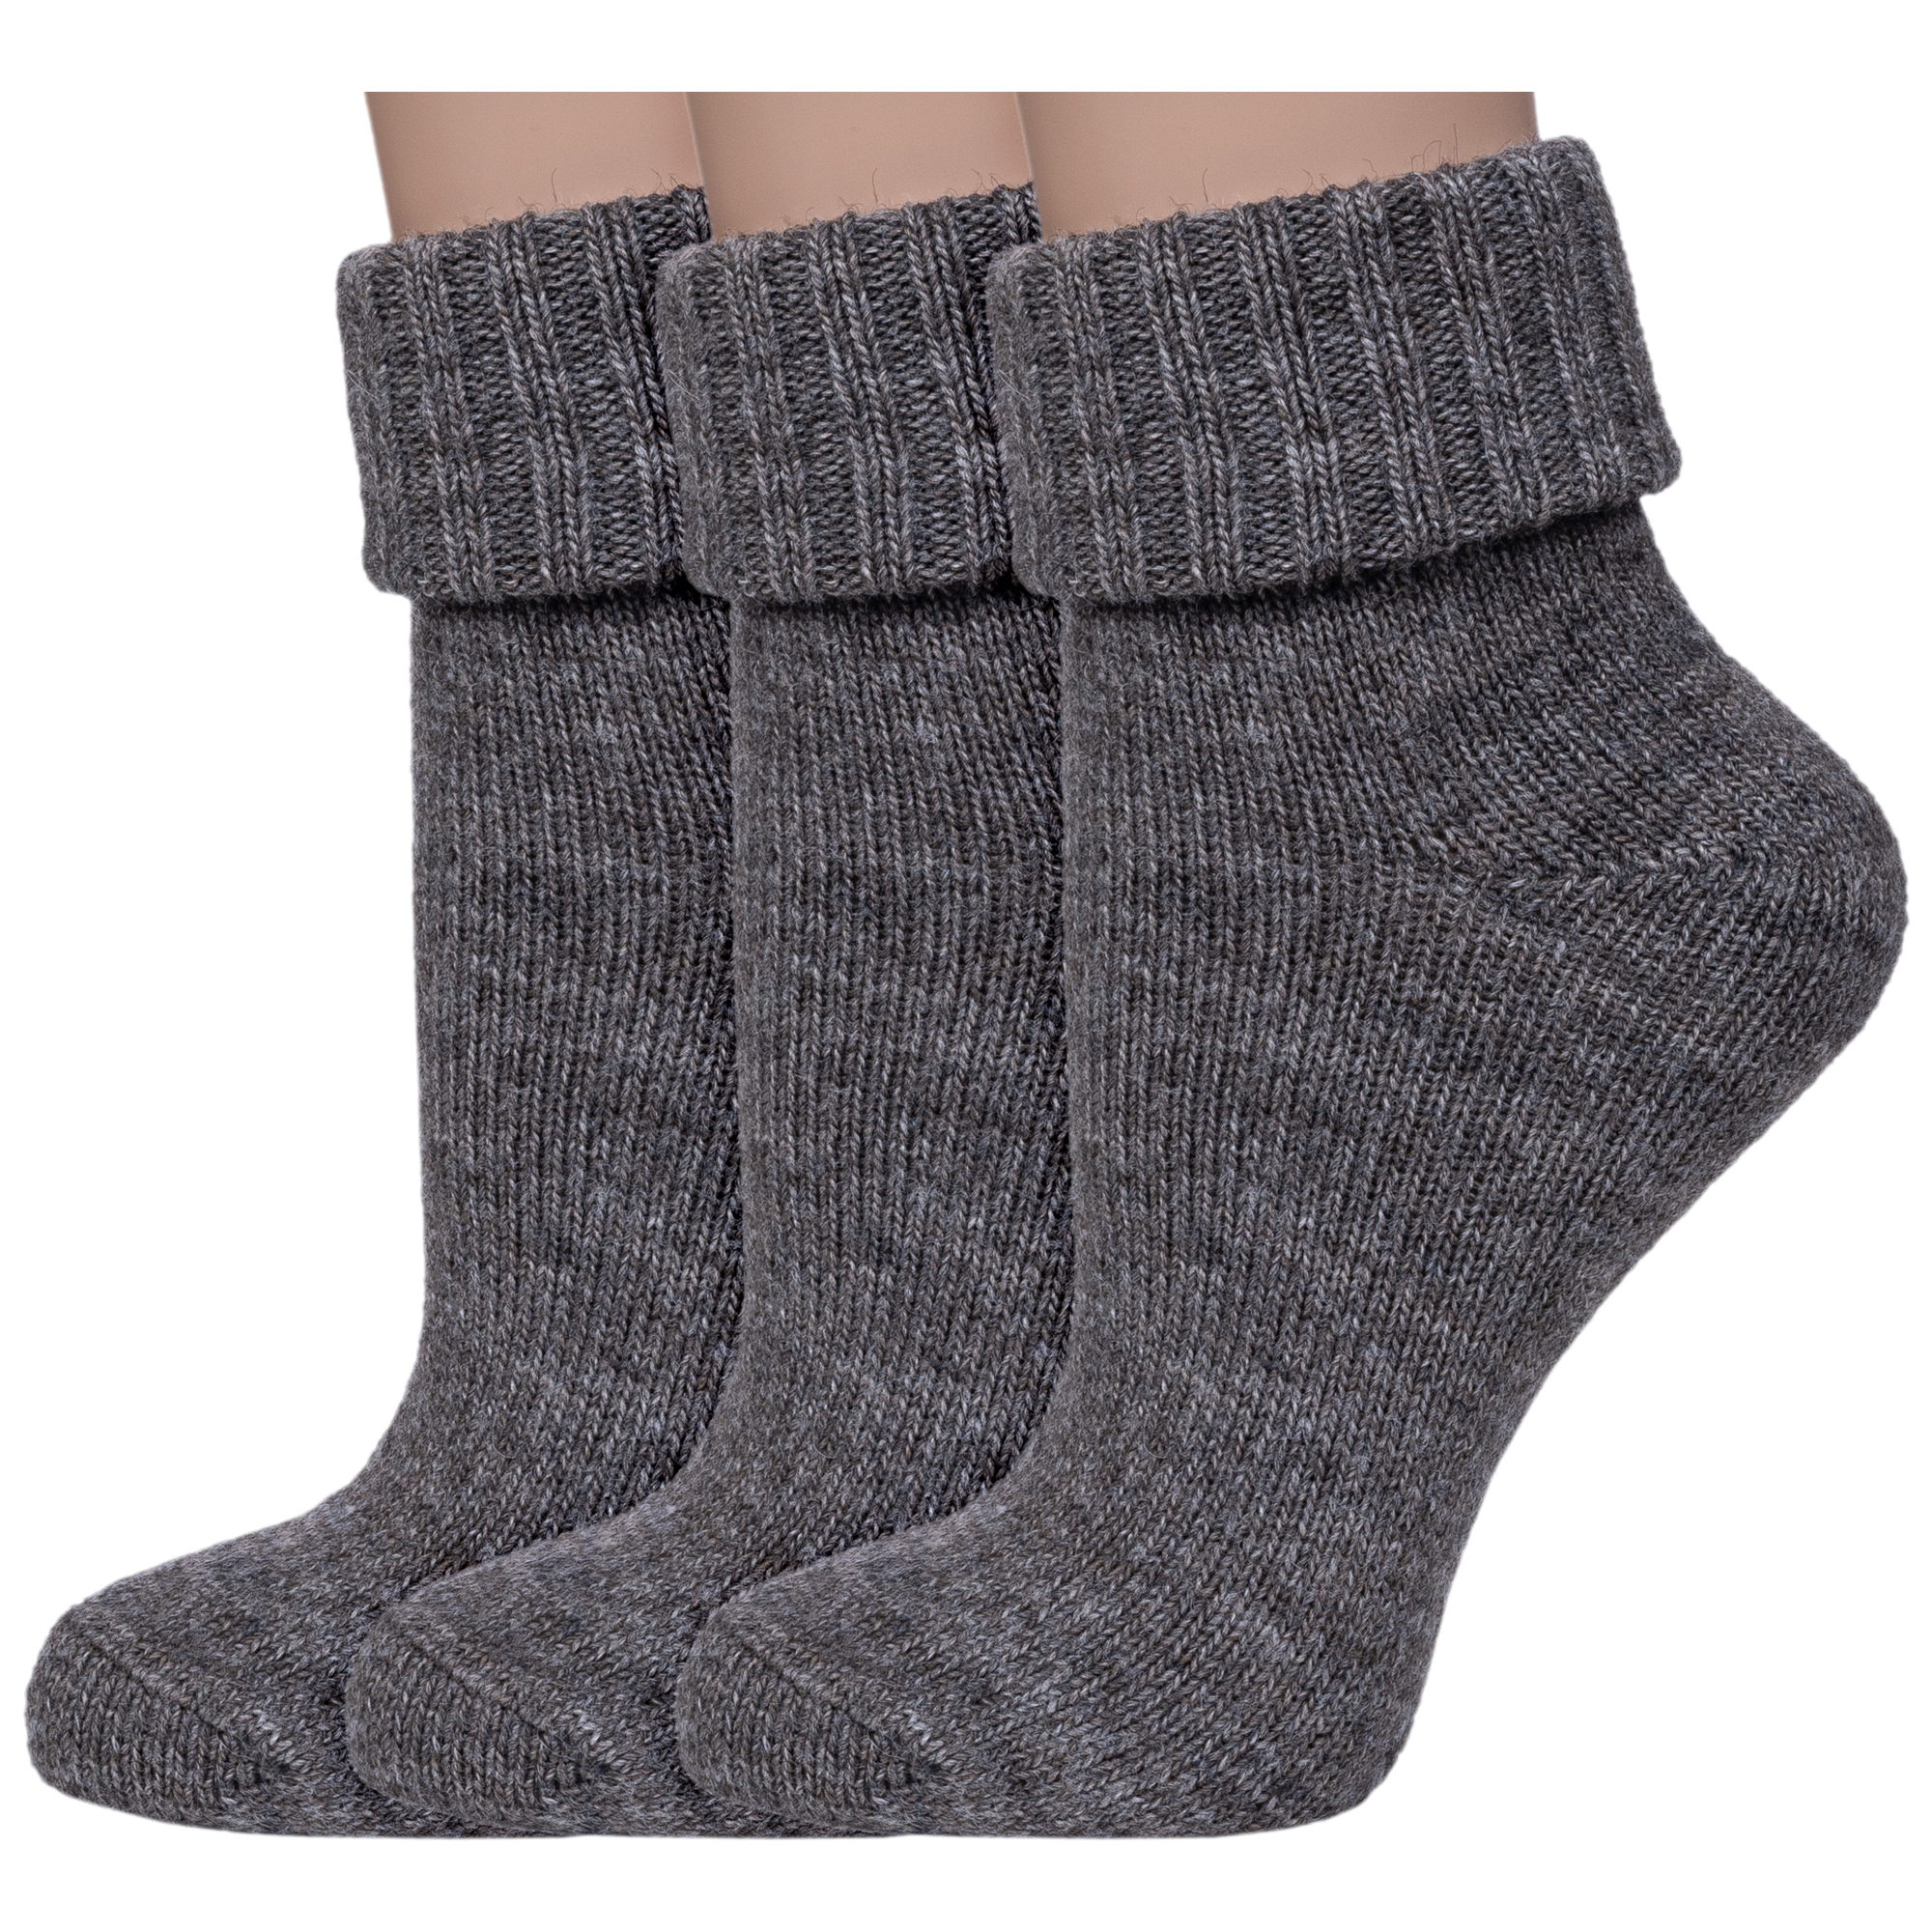 Комплект носков женских Rusocks 3-Ж-195 серых; коричневых 23-25